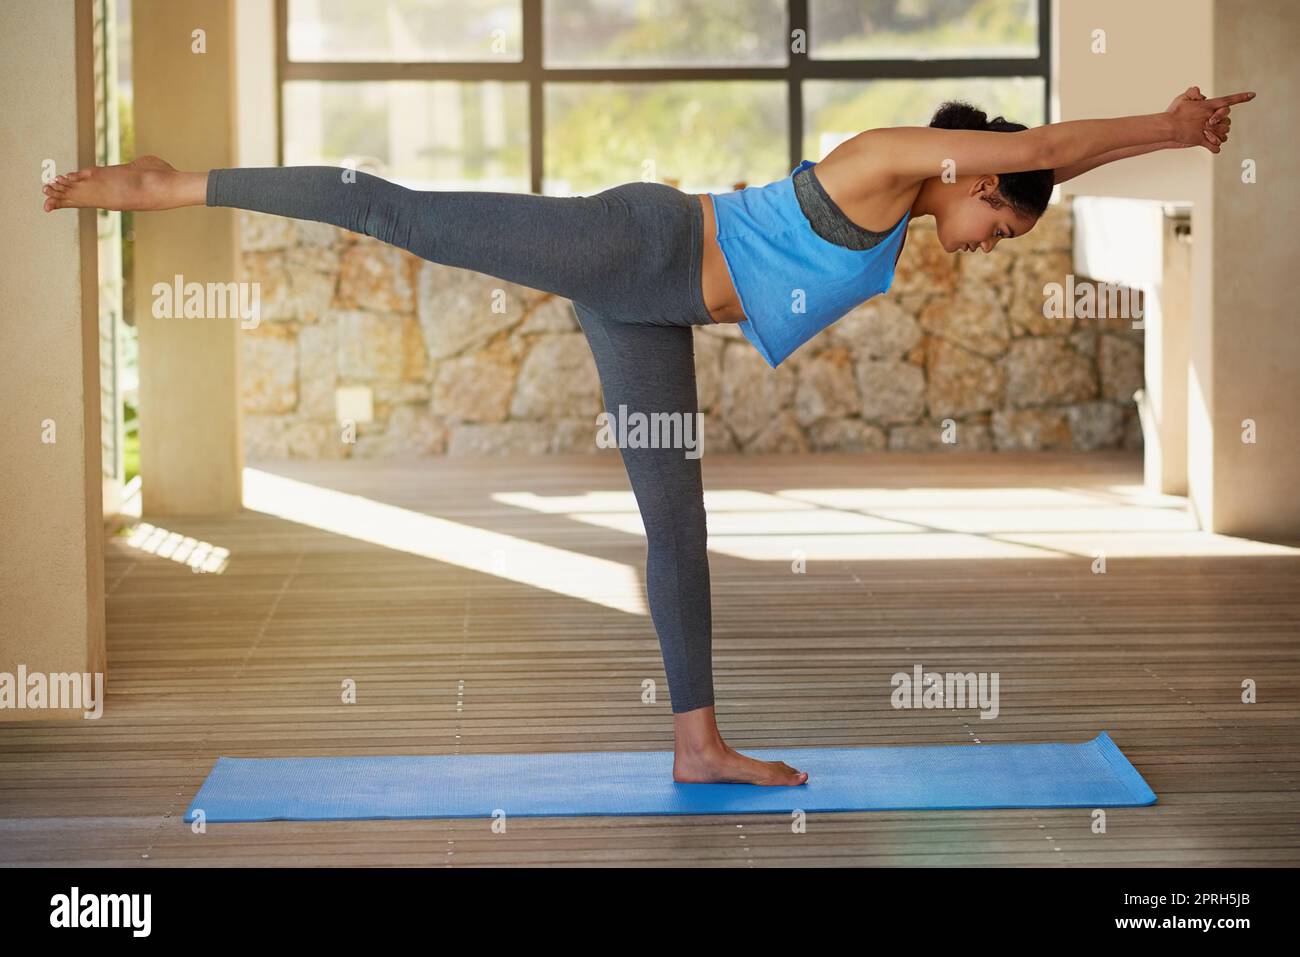 Steigerung ihrer Muskelkraft und ihres Tonus durch Yoga. Eine junge Frau, die zu Hause Yoga praktiziert. Stockfoto